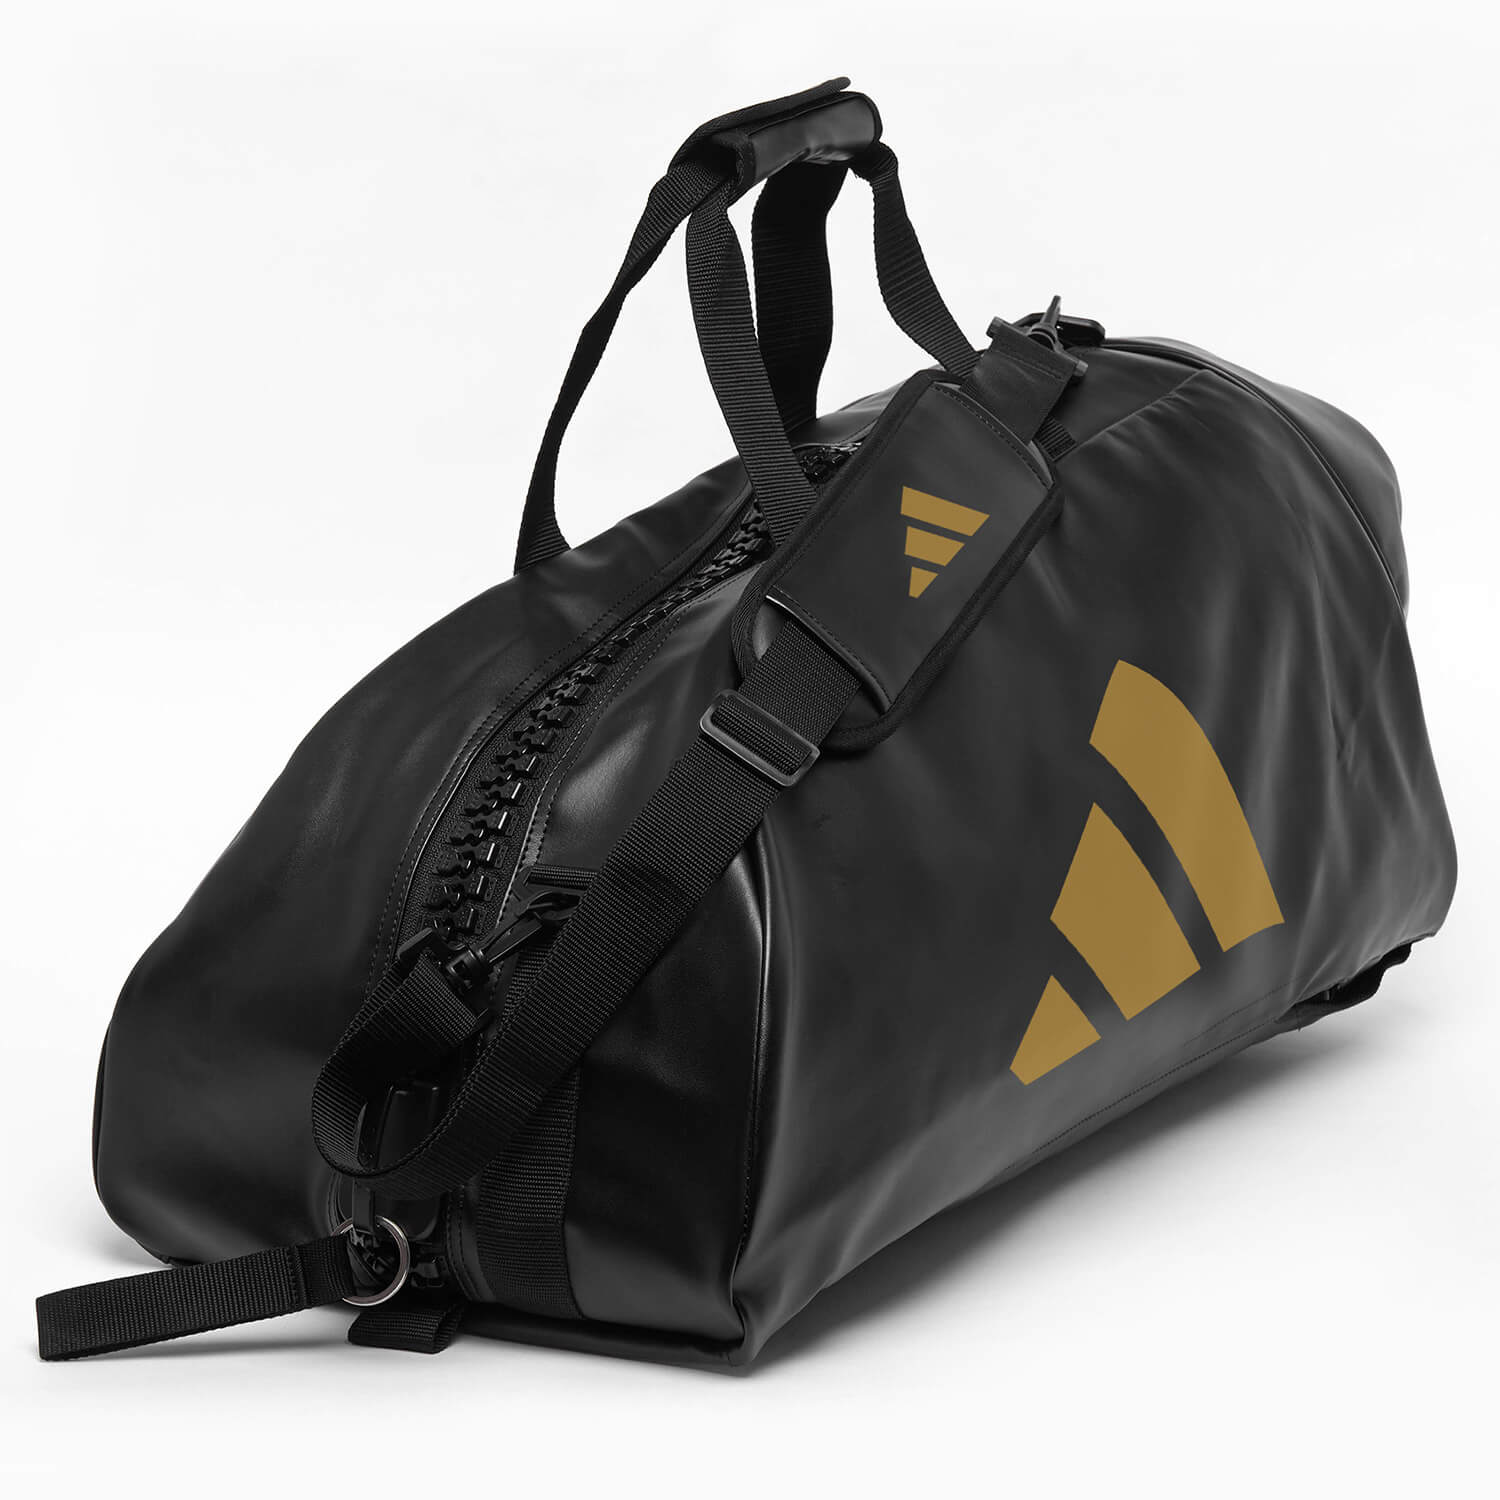 Αθλητική Τσάντα adidas 3 IN 1 TEAMBAG - adiACC051NL - Μαύρο / Μπλε